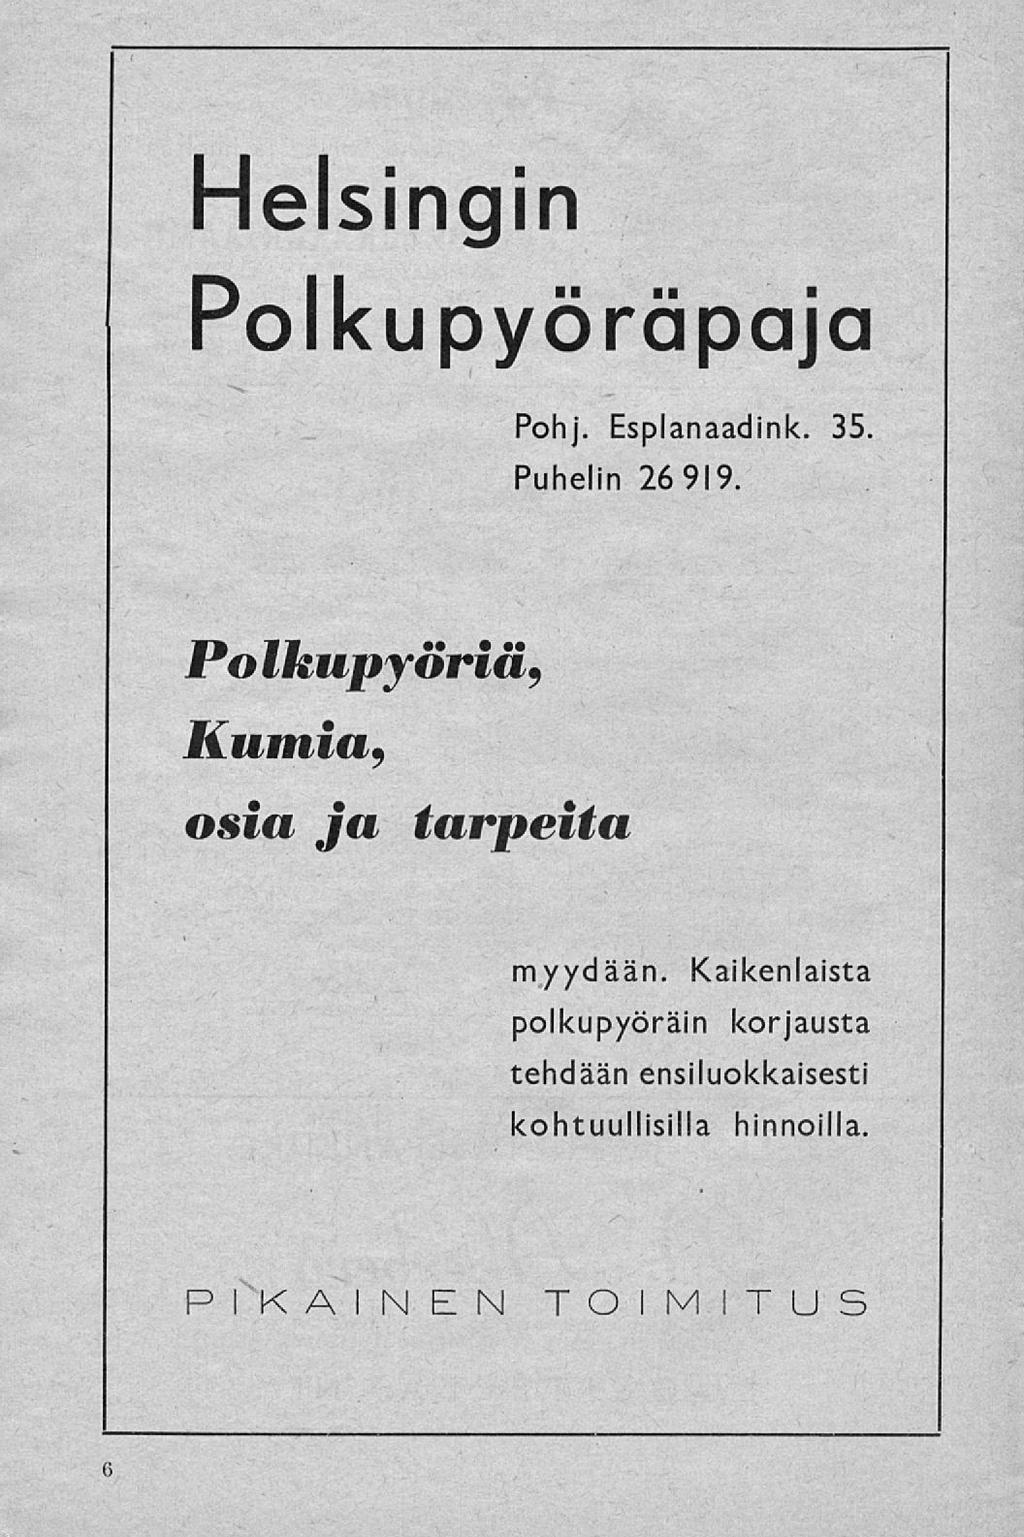 Helsingin Polkupyöräpaja Pohj. Esplanaadink. 35. Puhelin 26 919.